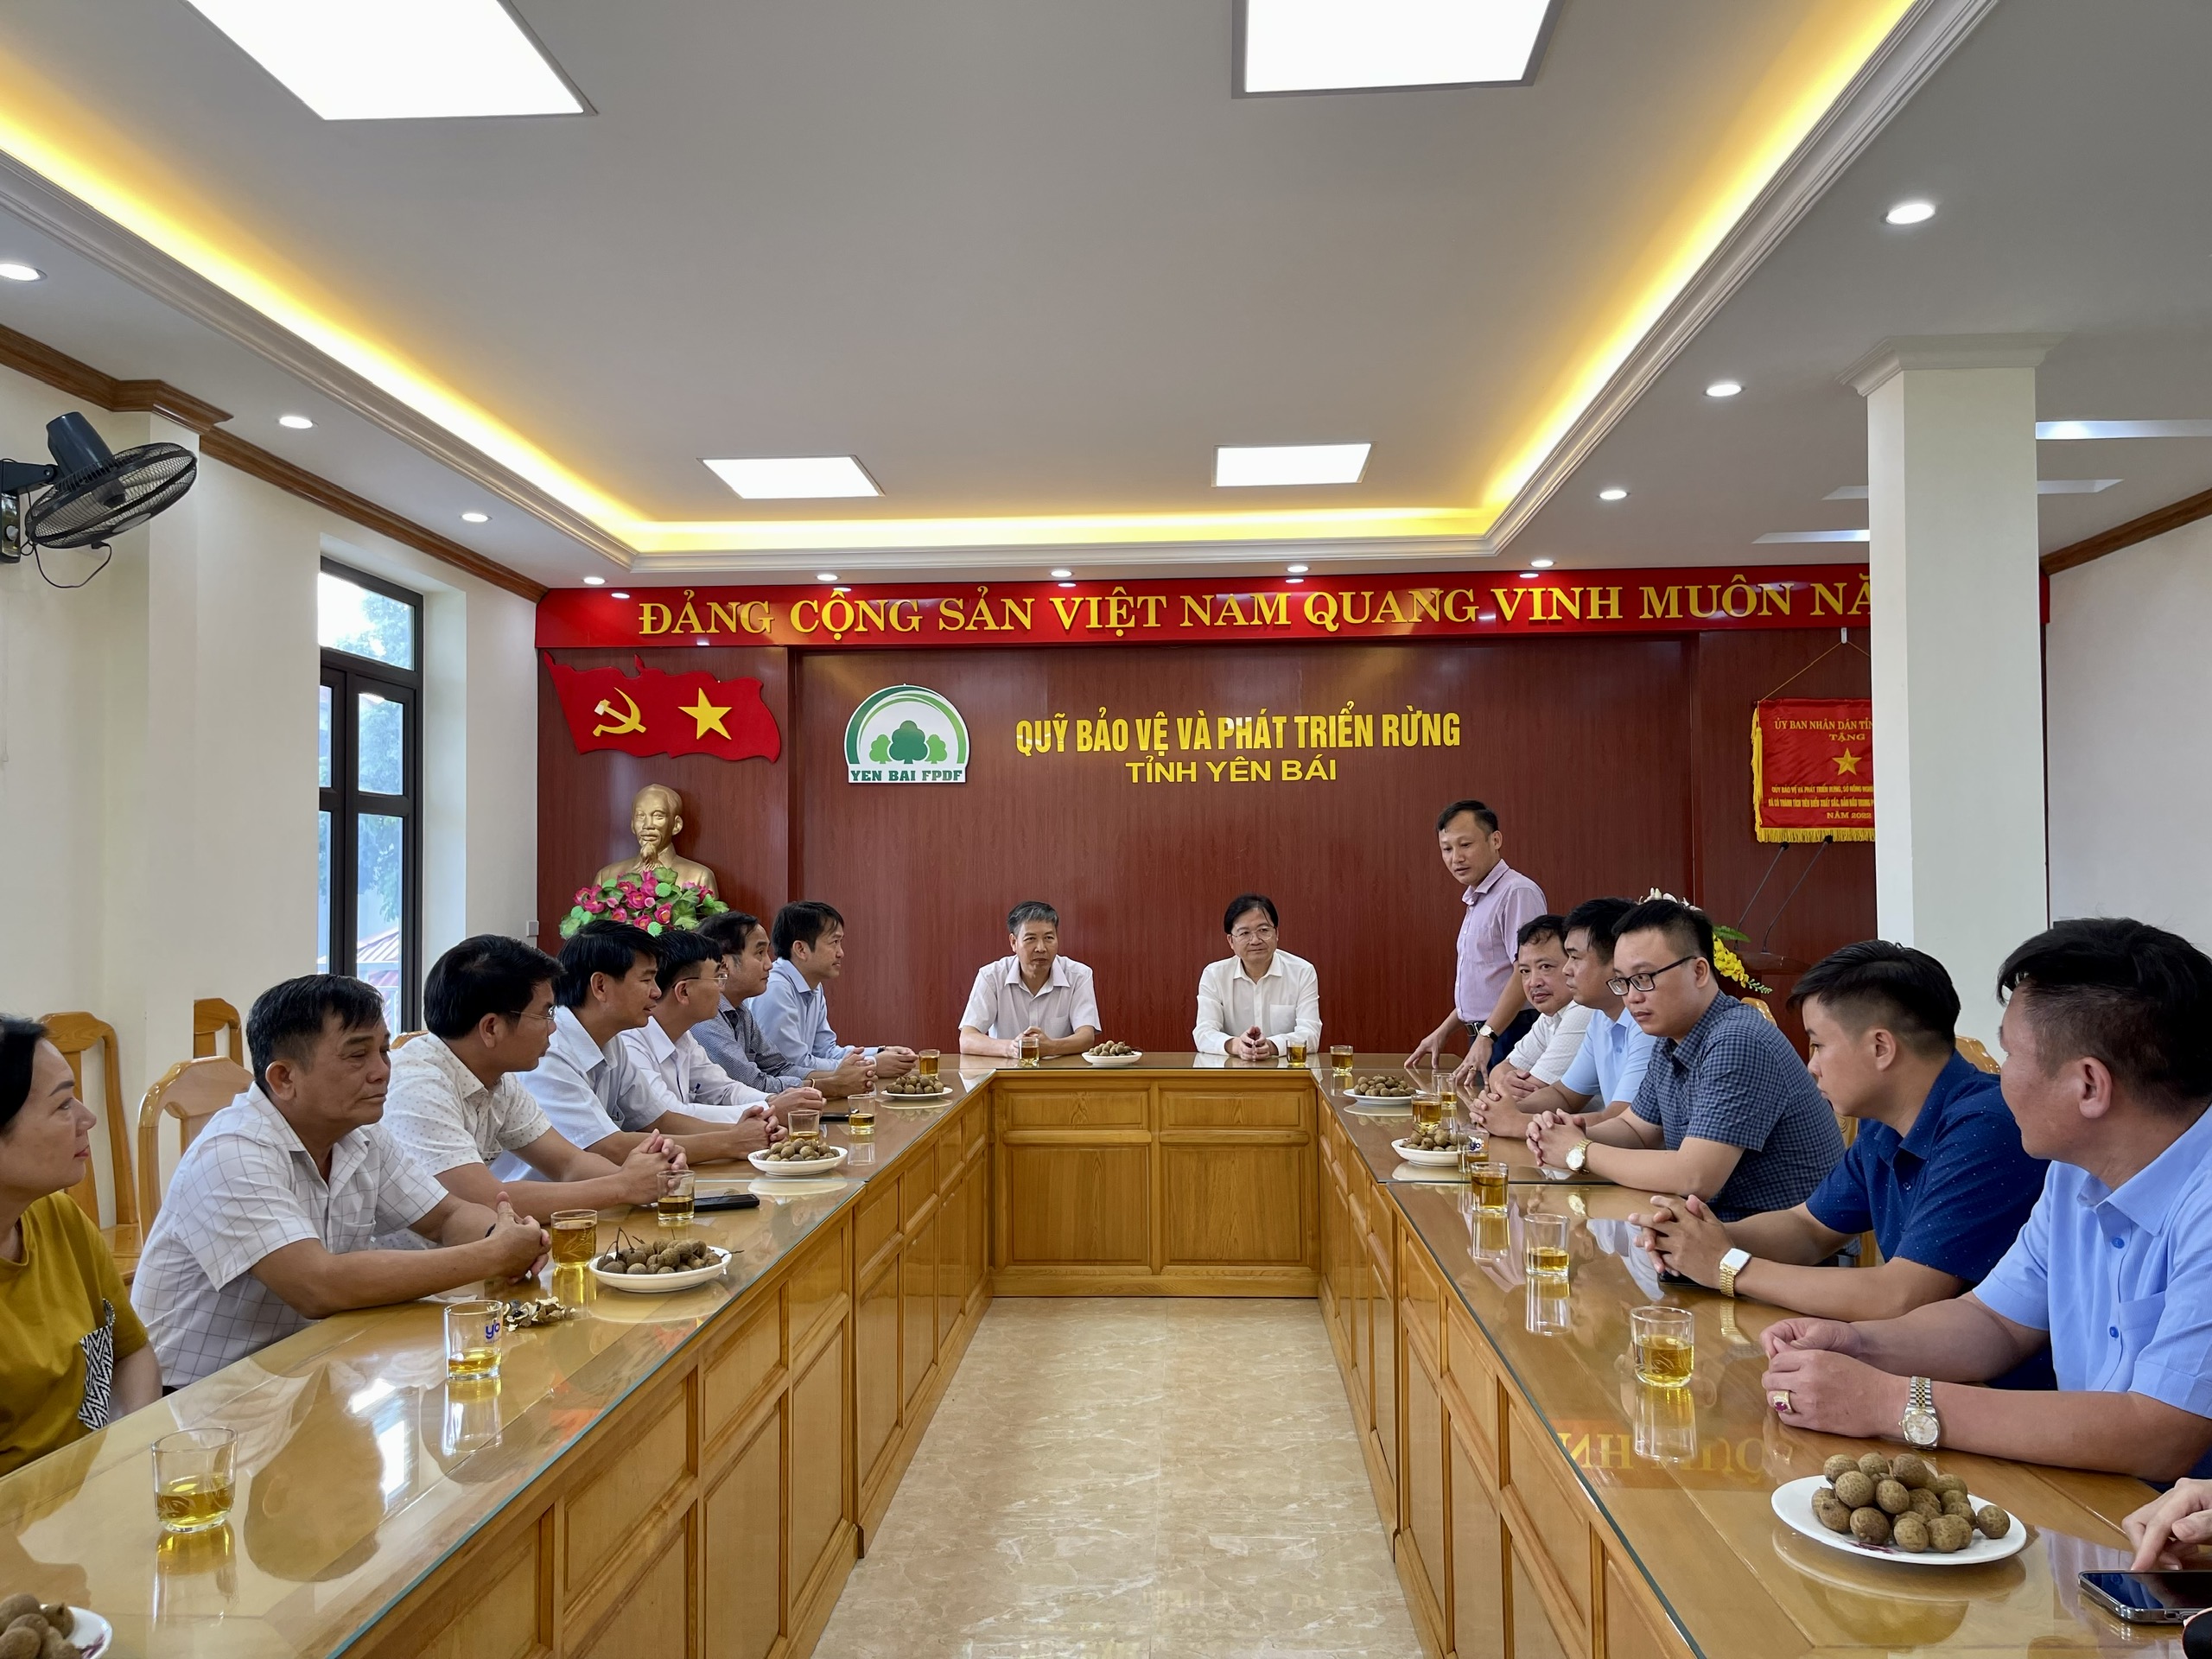 Quỹ Bảo vệ và Phát triển rừng tỉnh Yên Bái - Đắk Lắk trao đổi chia sẻ kinh nghiệm trong thực hiện chính sách chi trả dịch vụ môi trường rừng